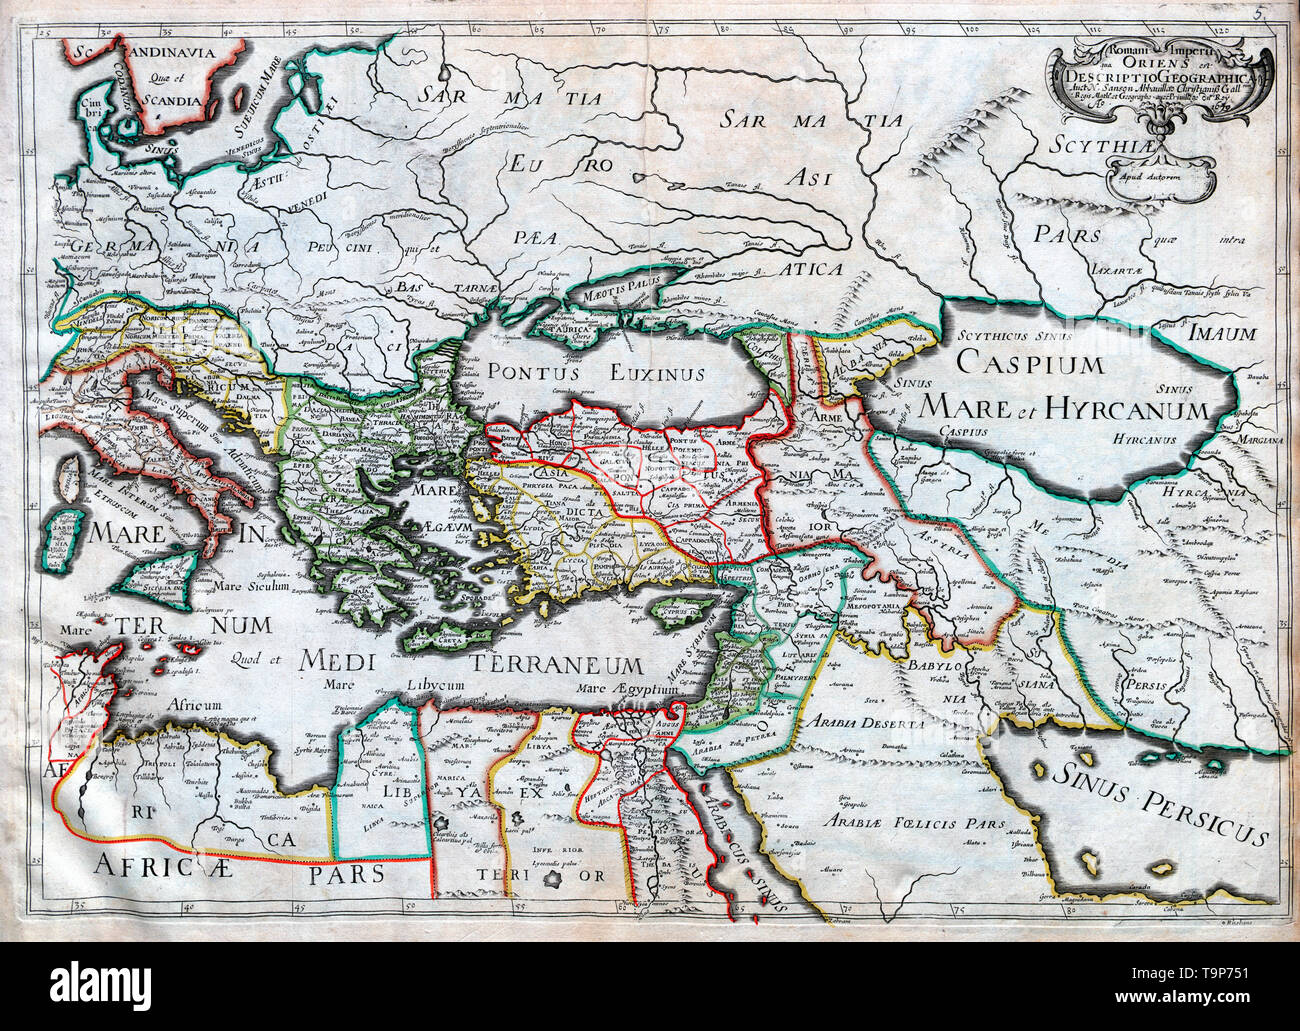 Romani Imperia Qua Oriens - Map of Eastern Roman Empire - Sanson Atlas, circa 1700 Stock Photo